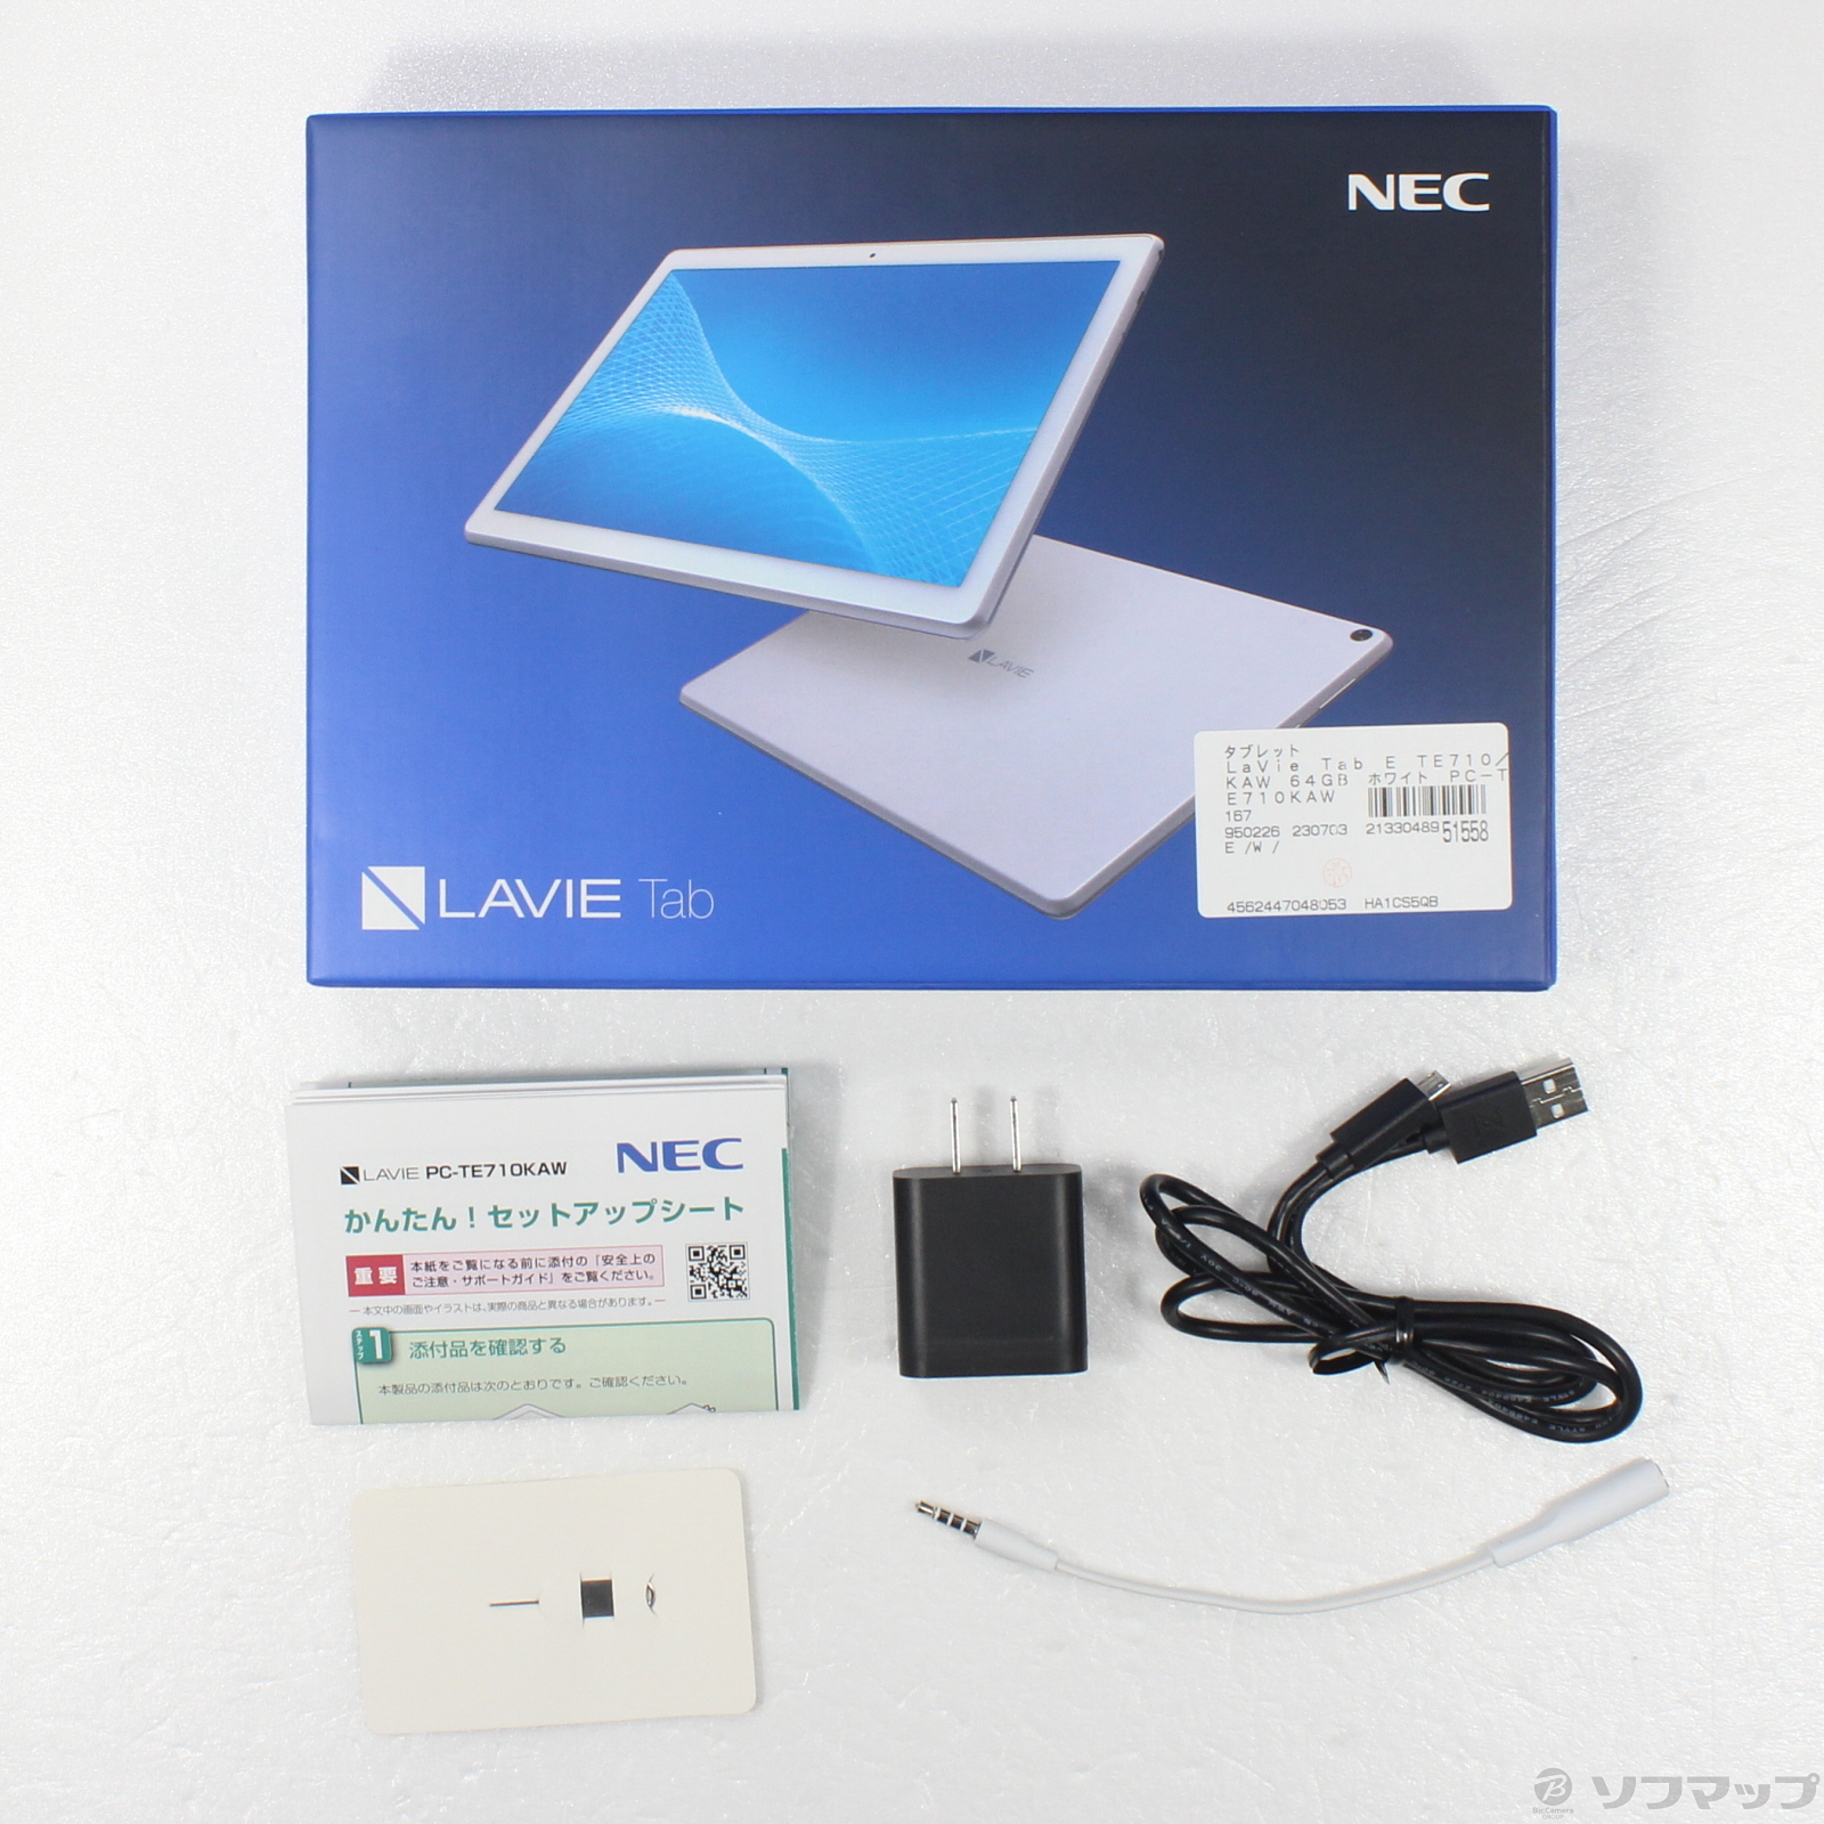 PC-TE710 KAW NEC LAVIE Tab E 64GB